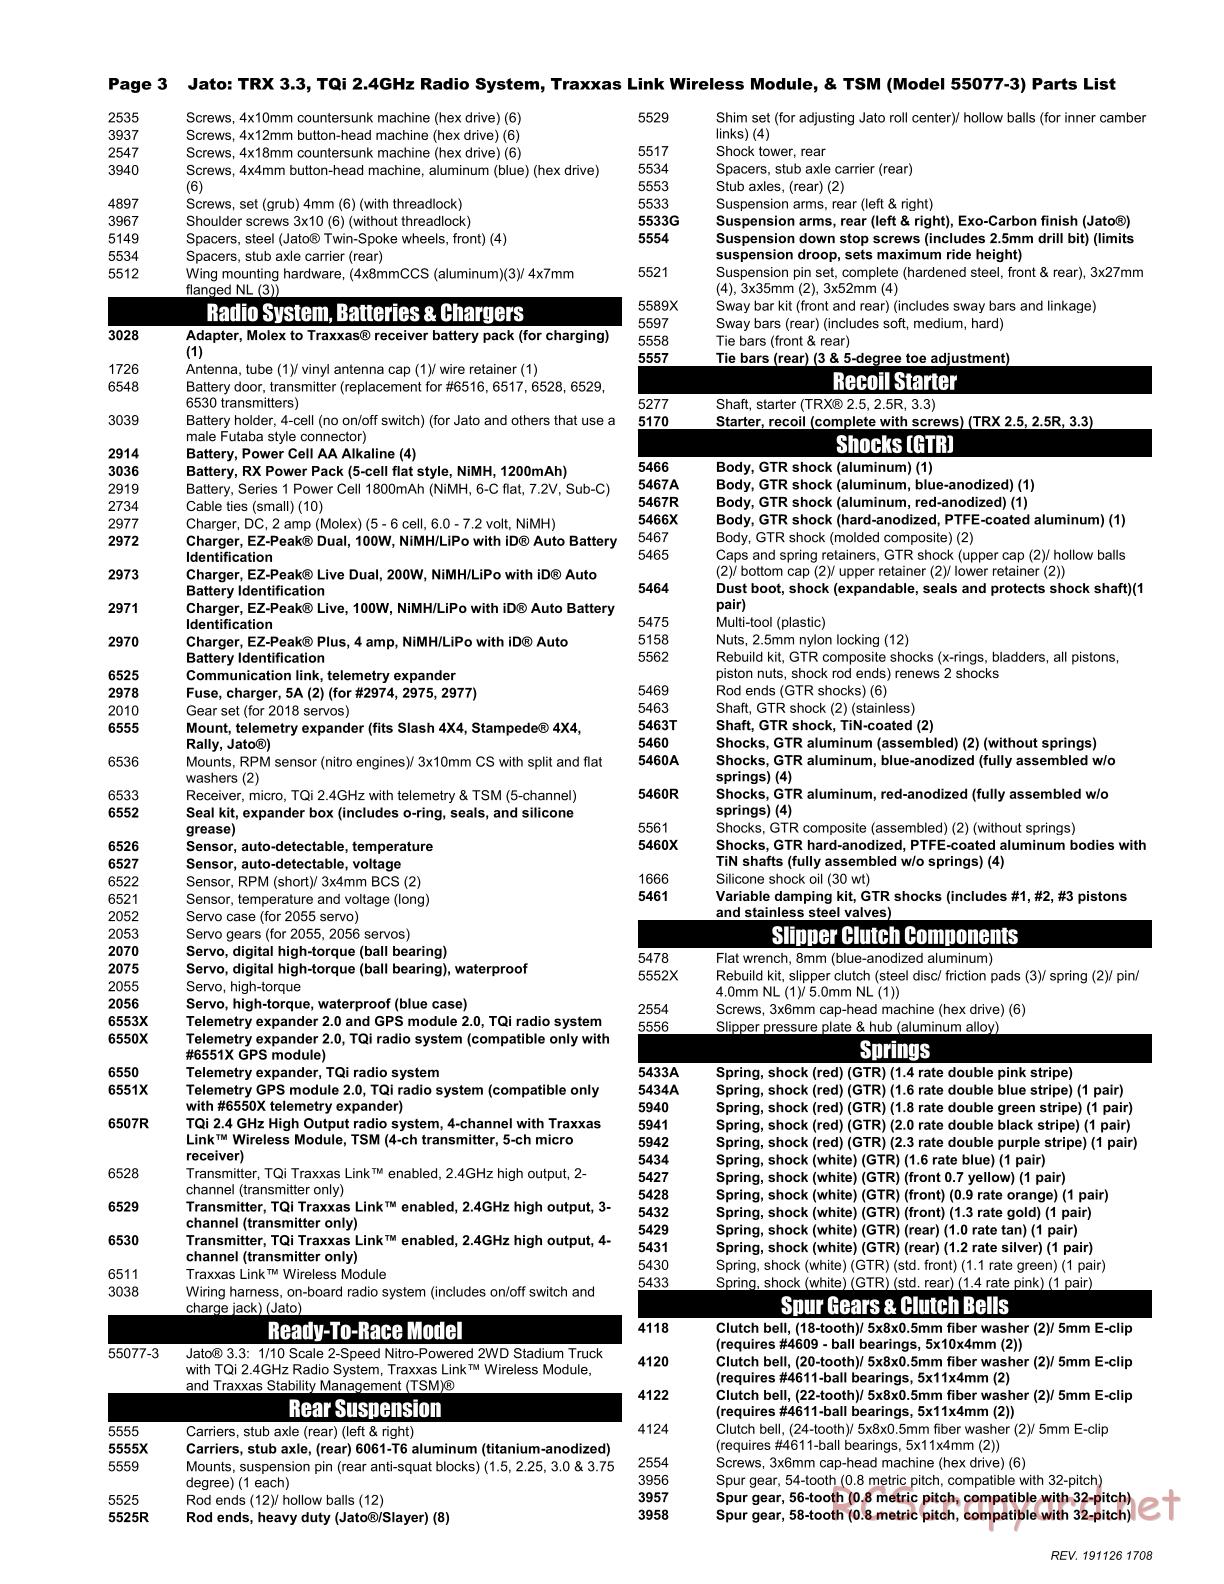 Traxxas - Jato 3.3 TSM - Parts List - Page 3